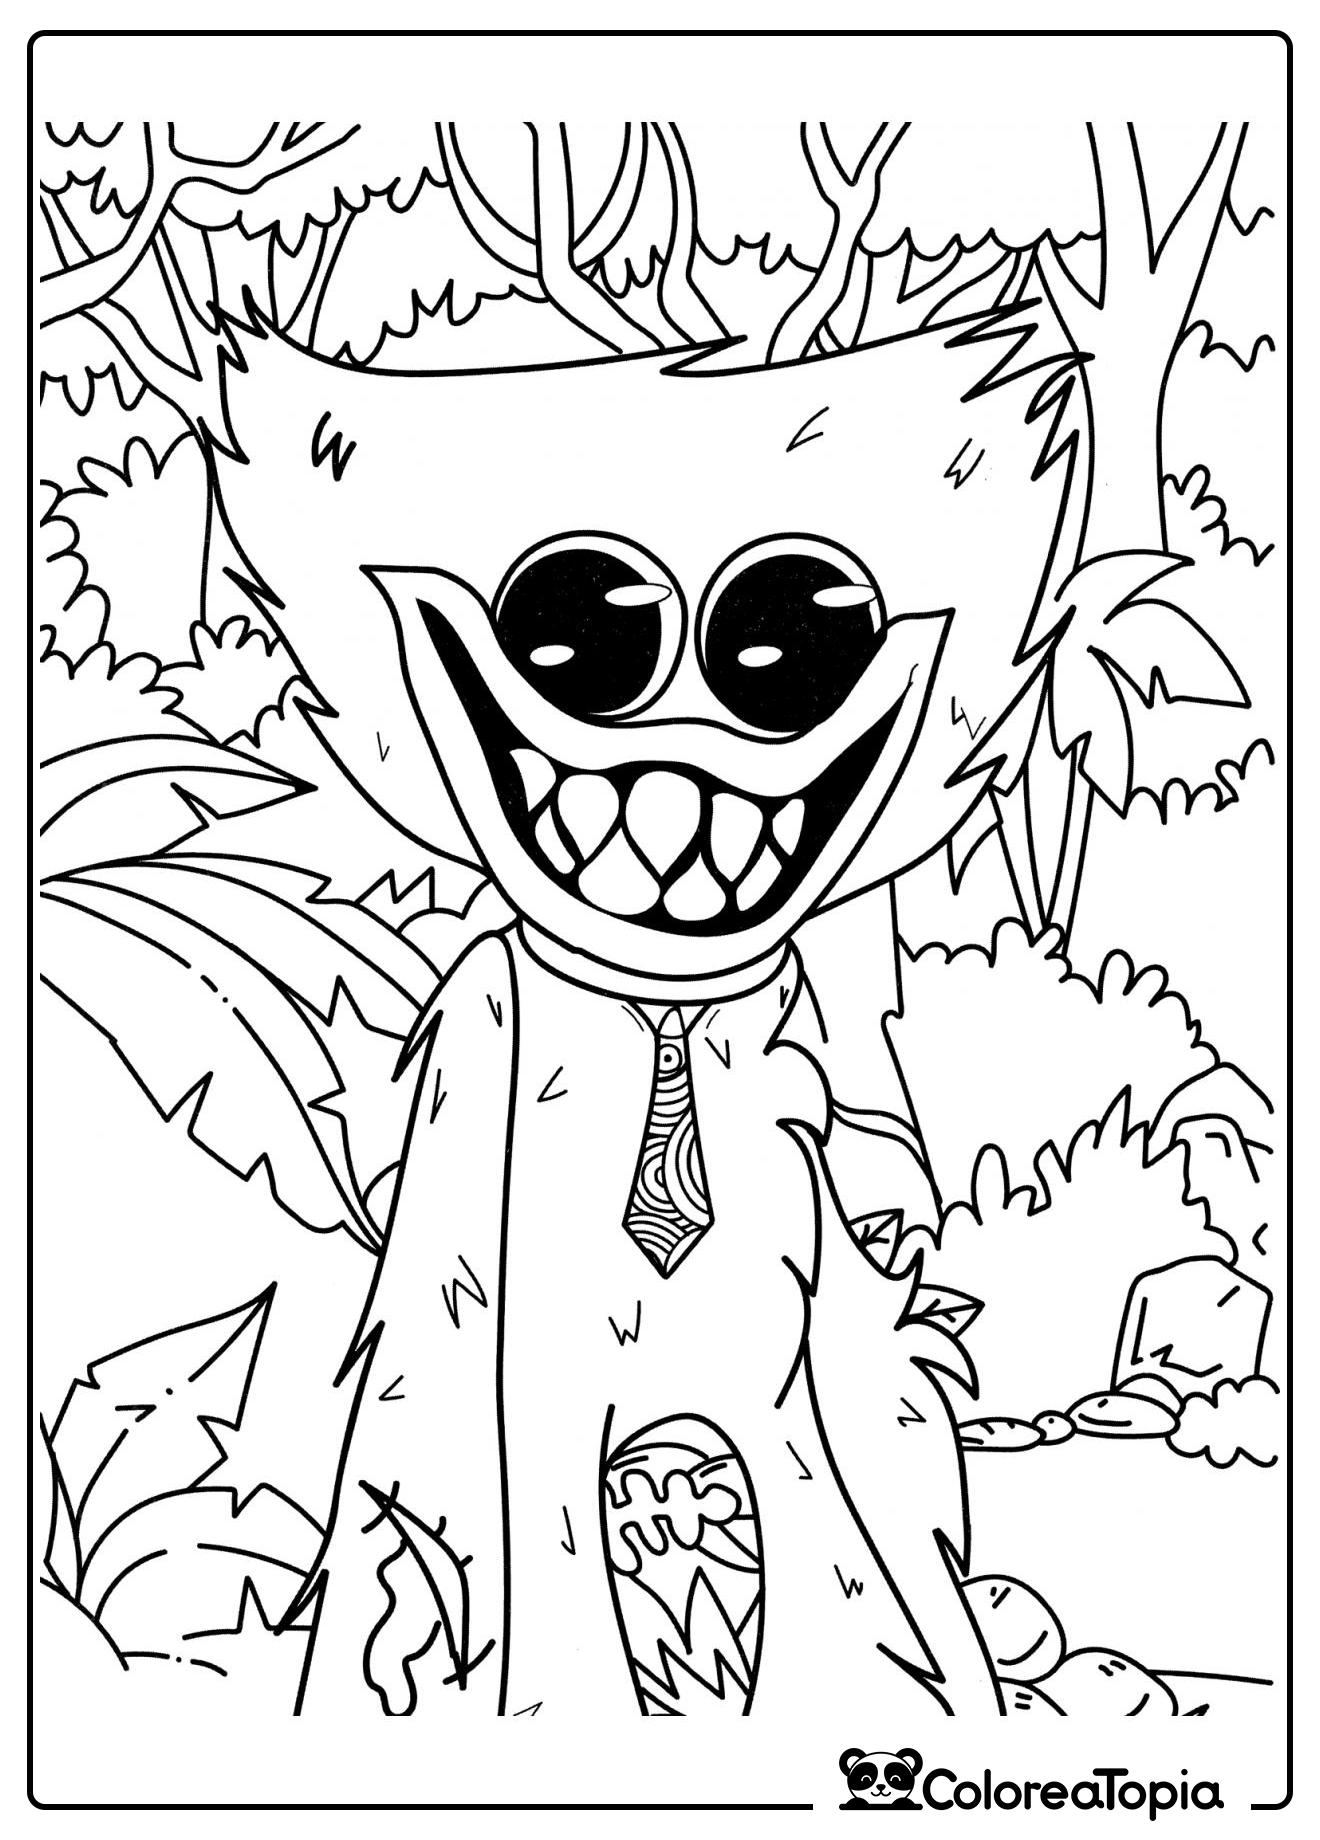 Huggy Wuggy en el bosque - dibujo para colorear